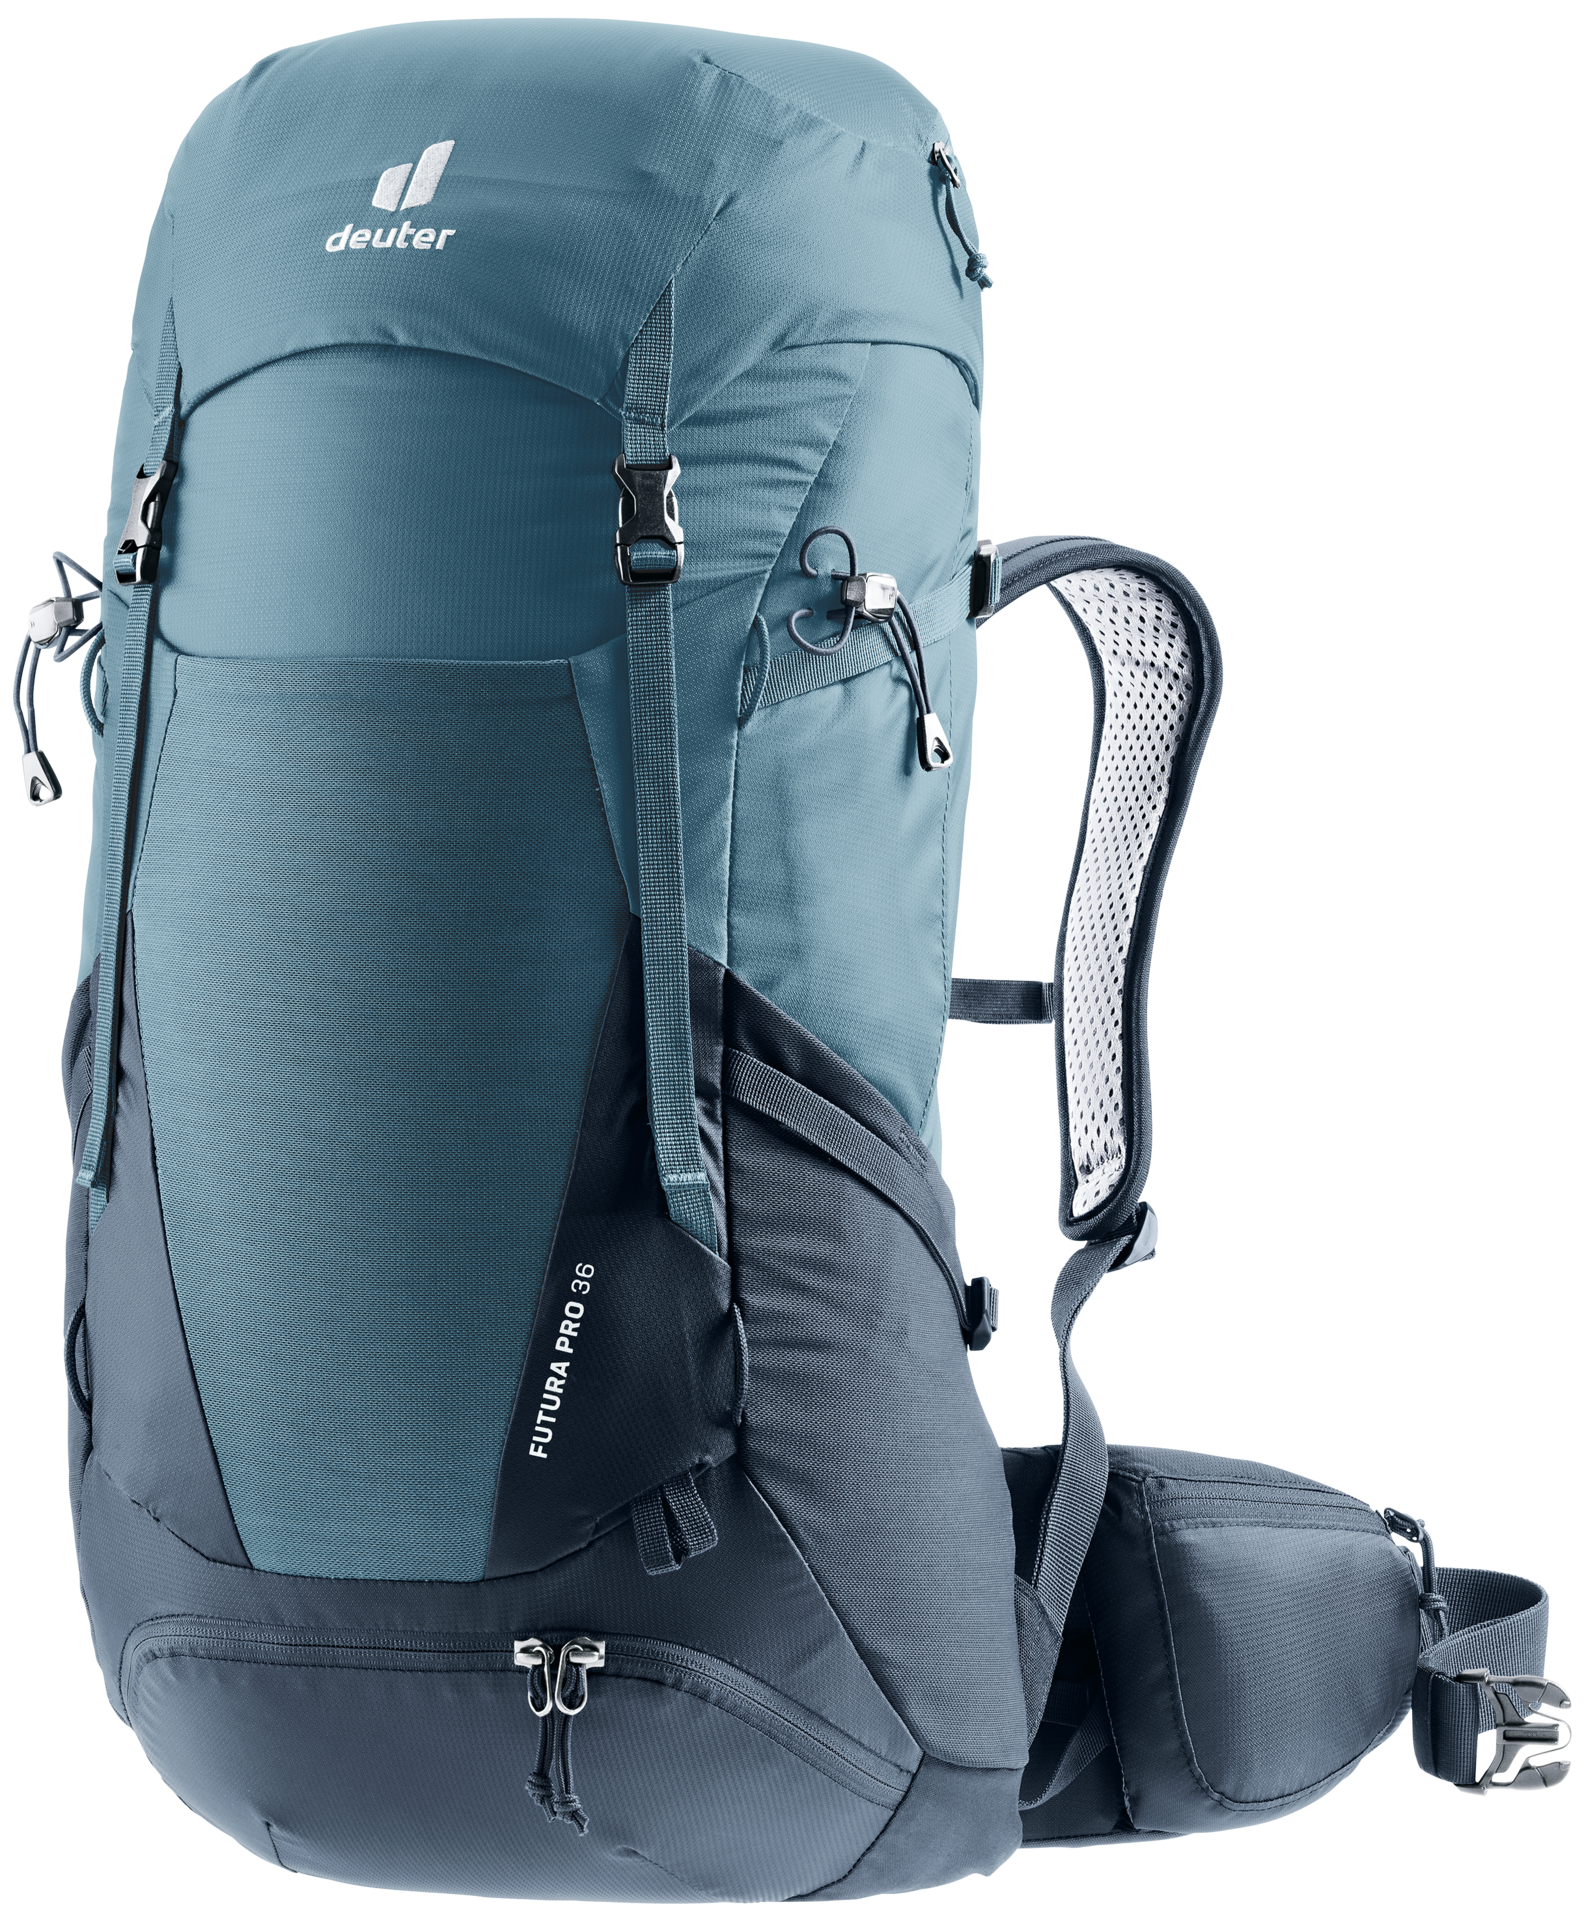 zout Uitwerpselen afdeling deuter Futura Pro 36 | Hiking backpack